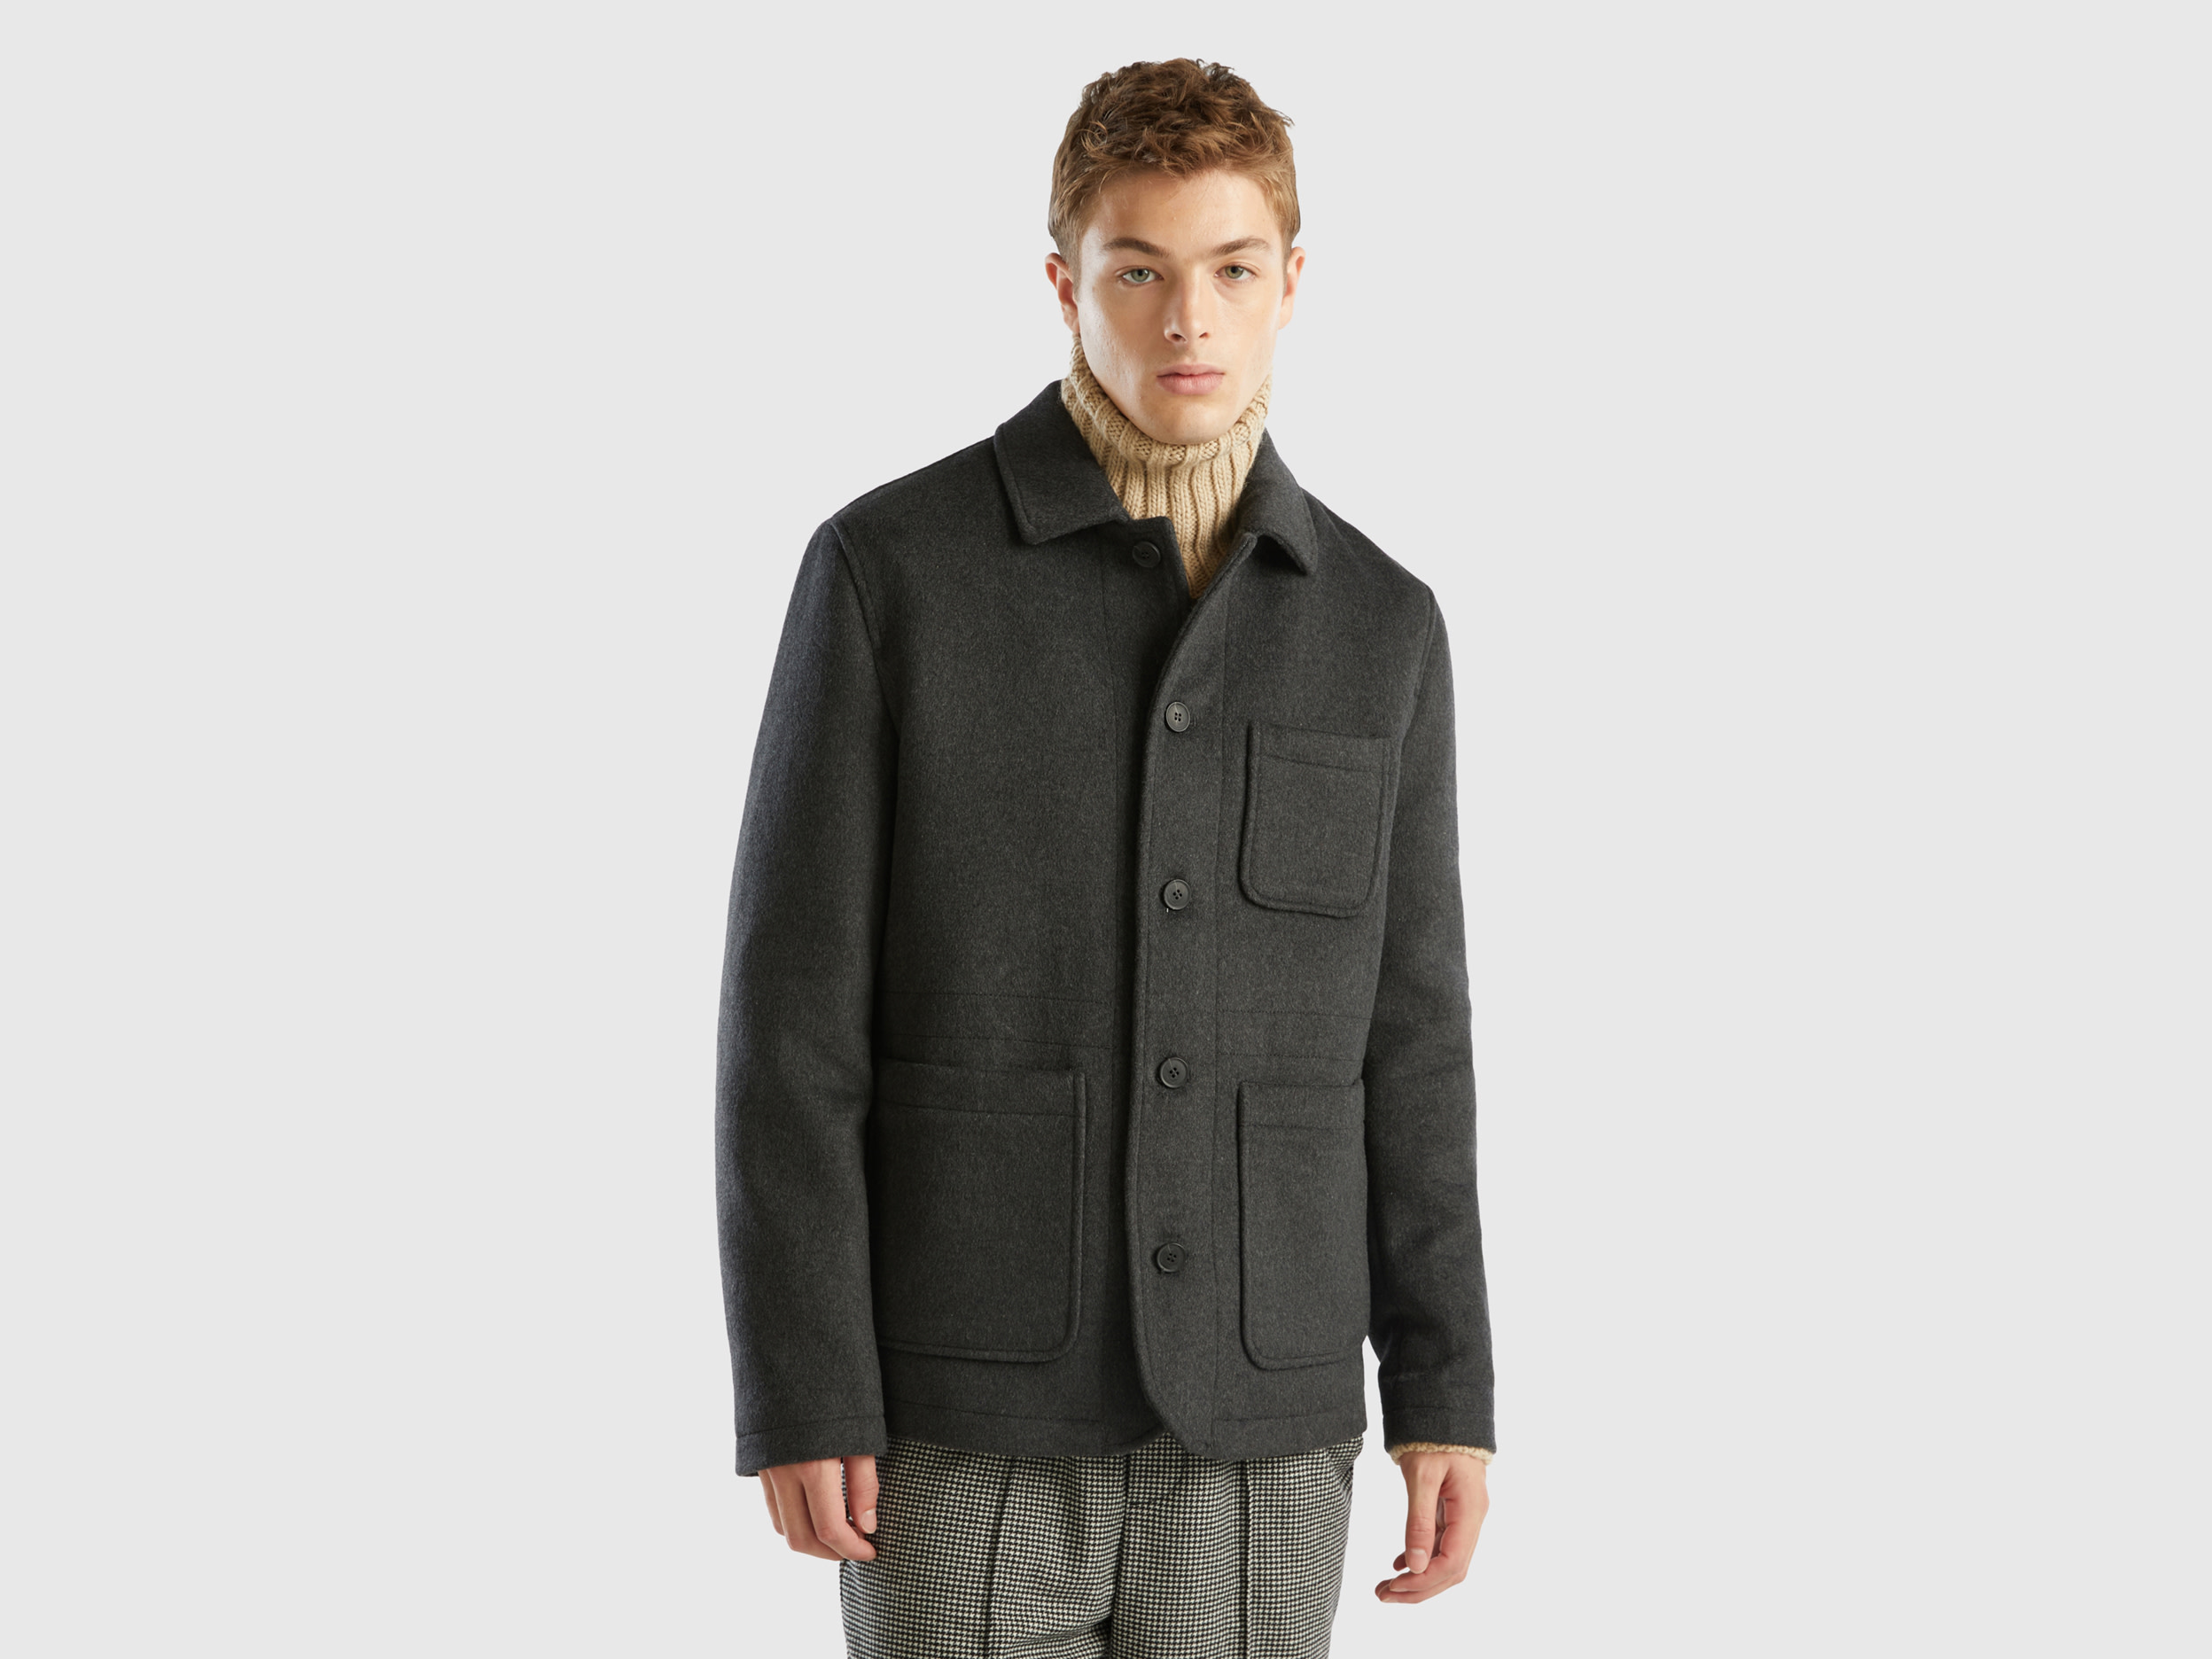 Benetton, Jacket In Woolen Cloth With Pockets, size XXXL, Dark Gray, Men